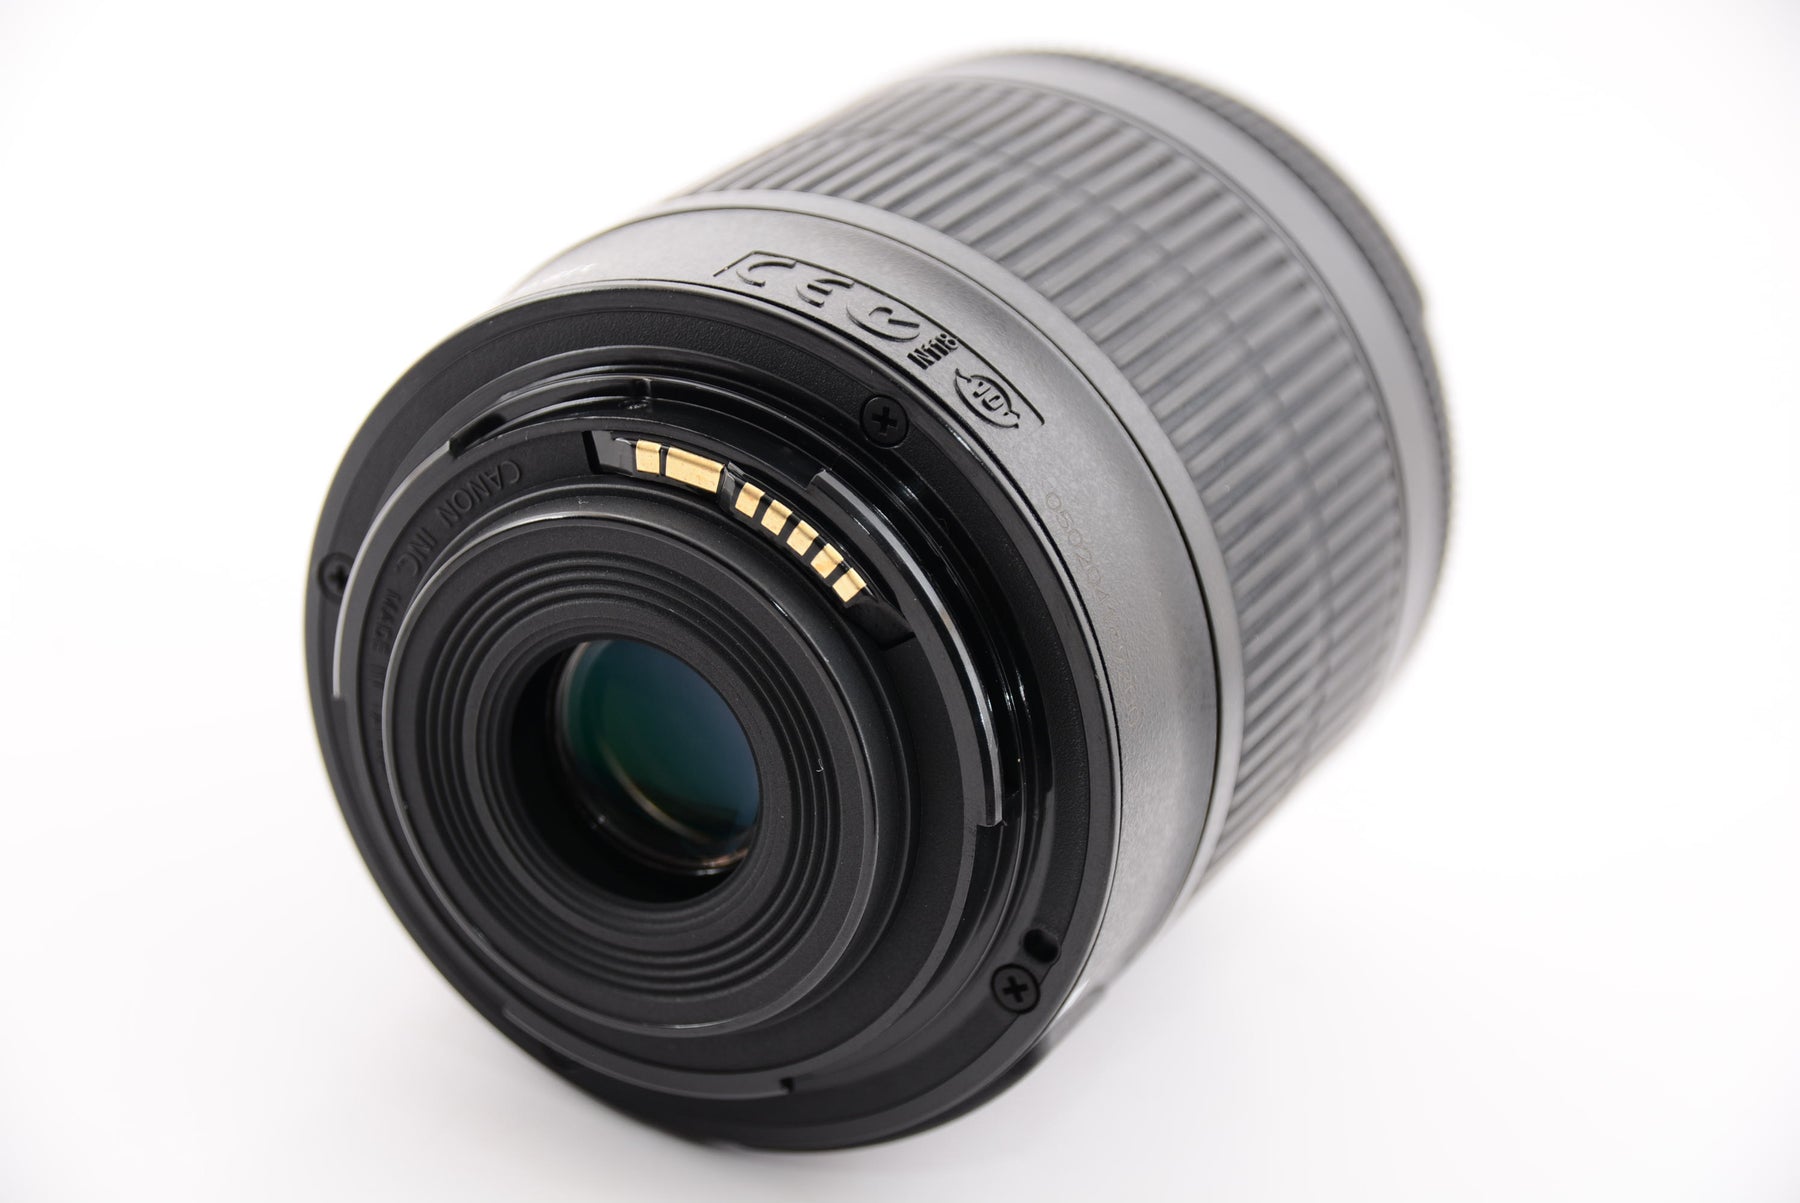 Canon デジタル一眼レフカメラ EOS Kiss X7 レンズキット EF-S18-55mm F3.5-5.6 IS STM付属 KISSX7-1 - 5